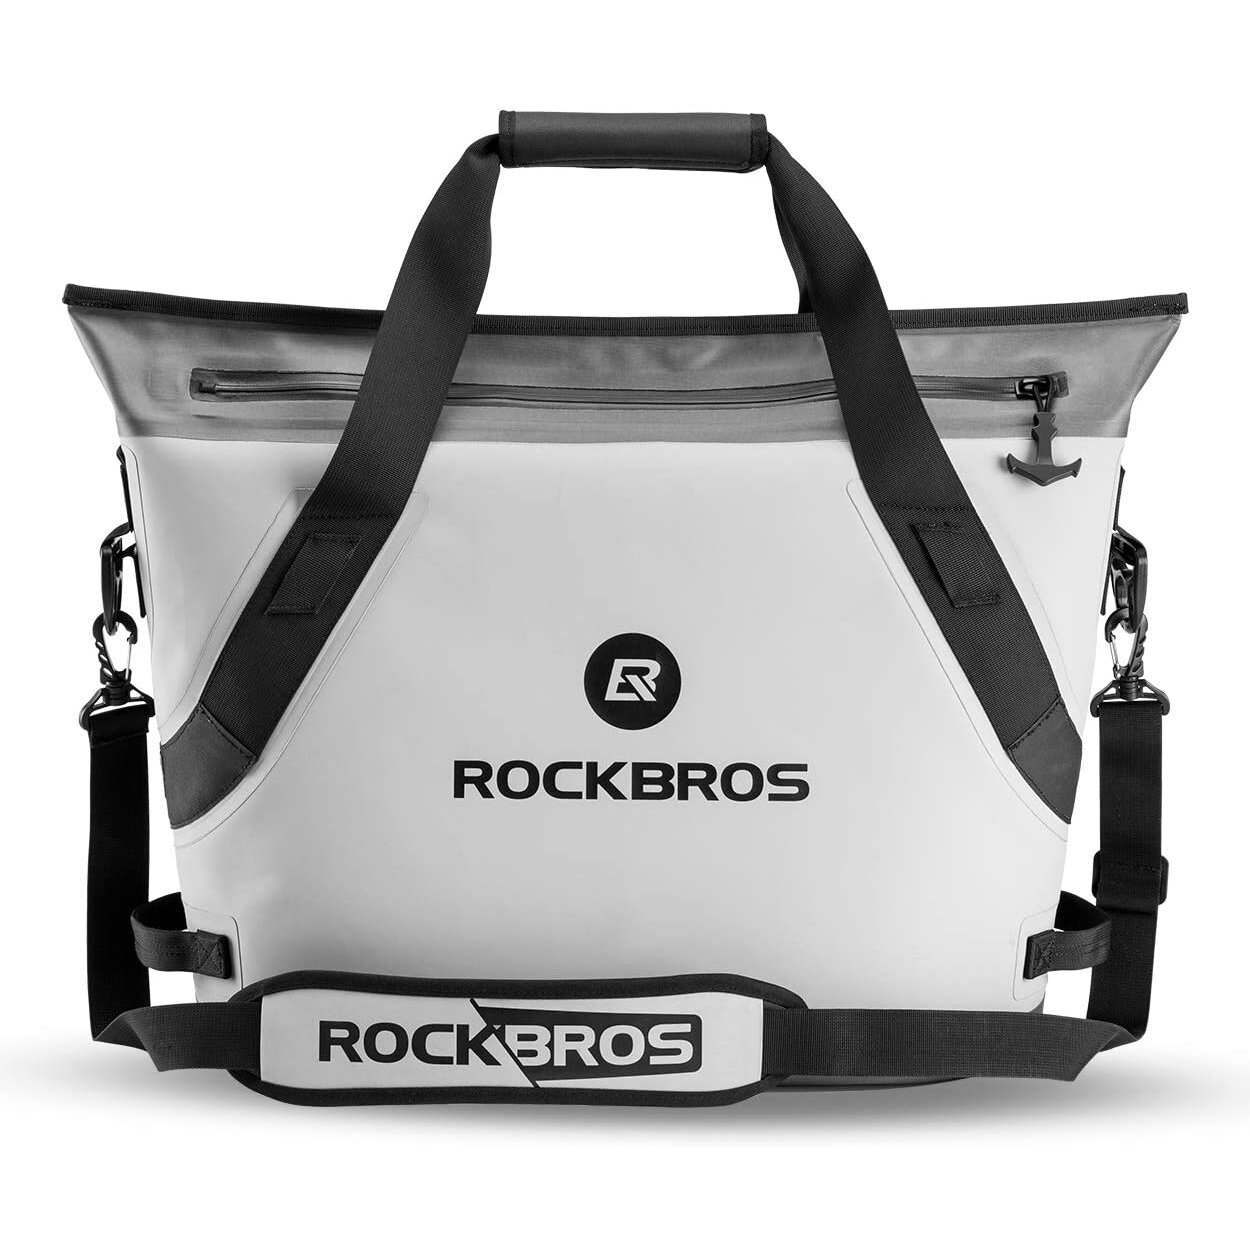 ROCKBROS BX-003 22L クーラーバッグ 防水アイスパック ランチバッグ キャンプ ピクニック ホイルサーマル断熱ハンドバッグ.